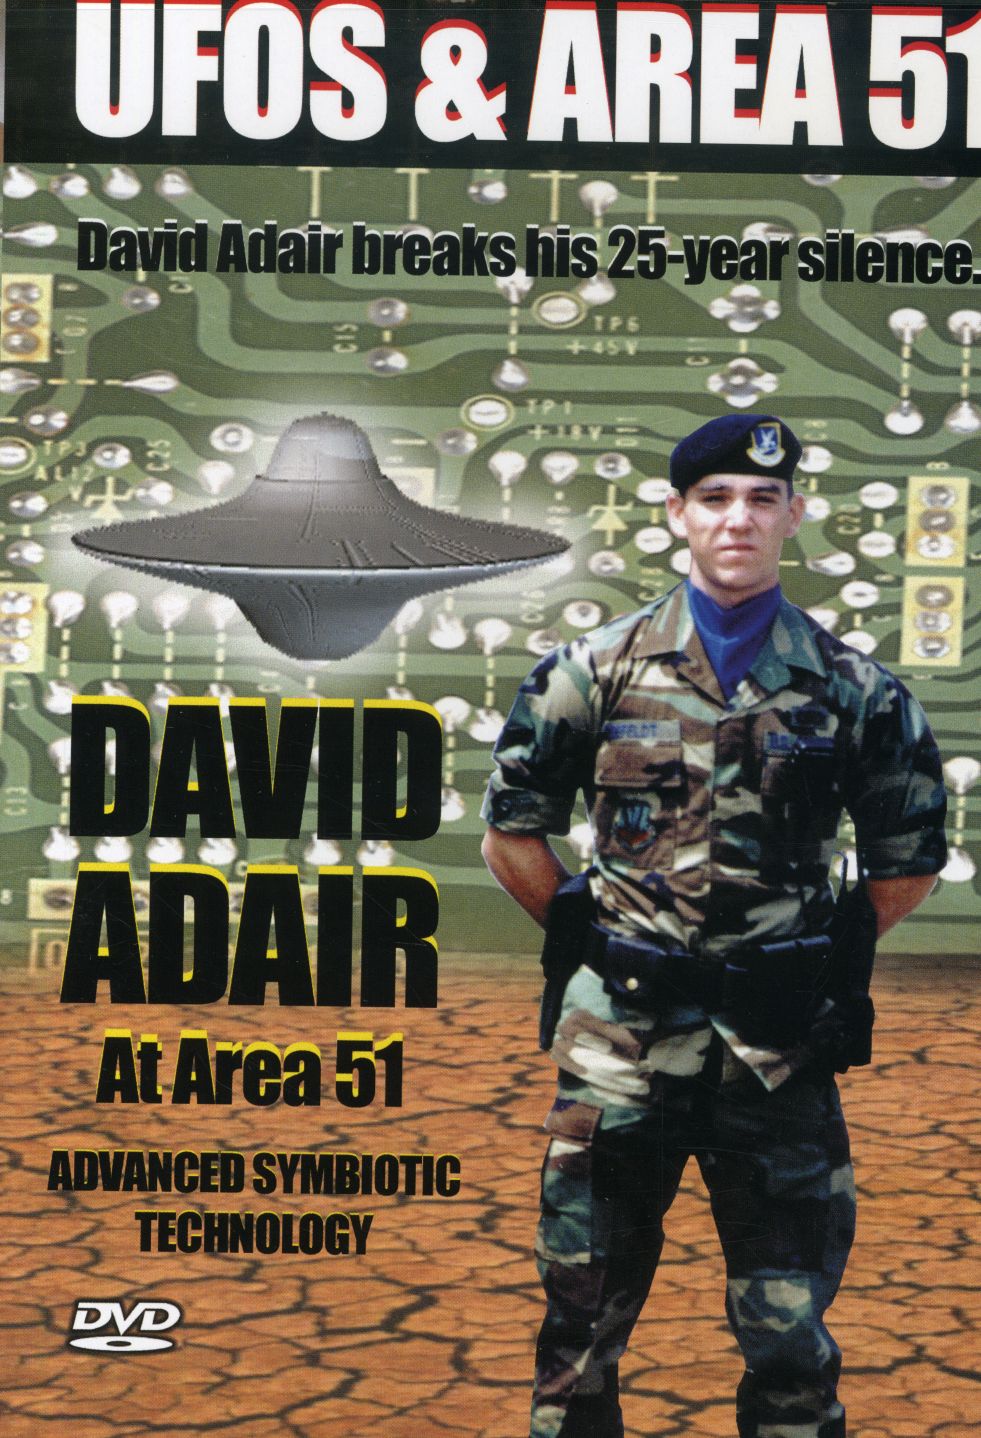 UFOS & AREA 51 3: DAVID ADAIR AT AREA 51